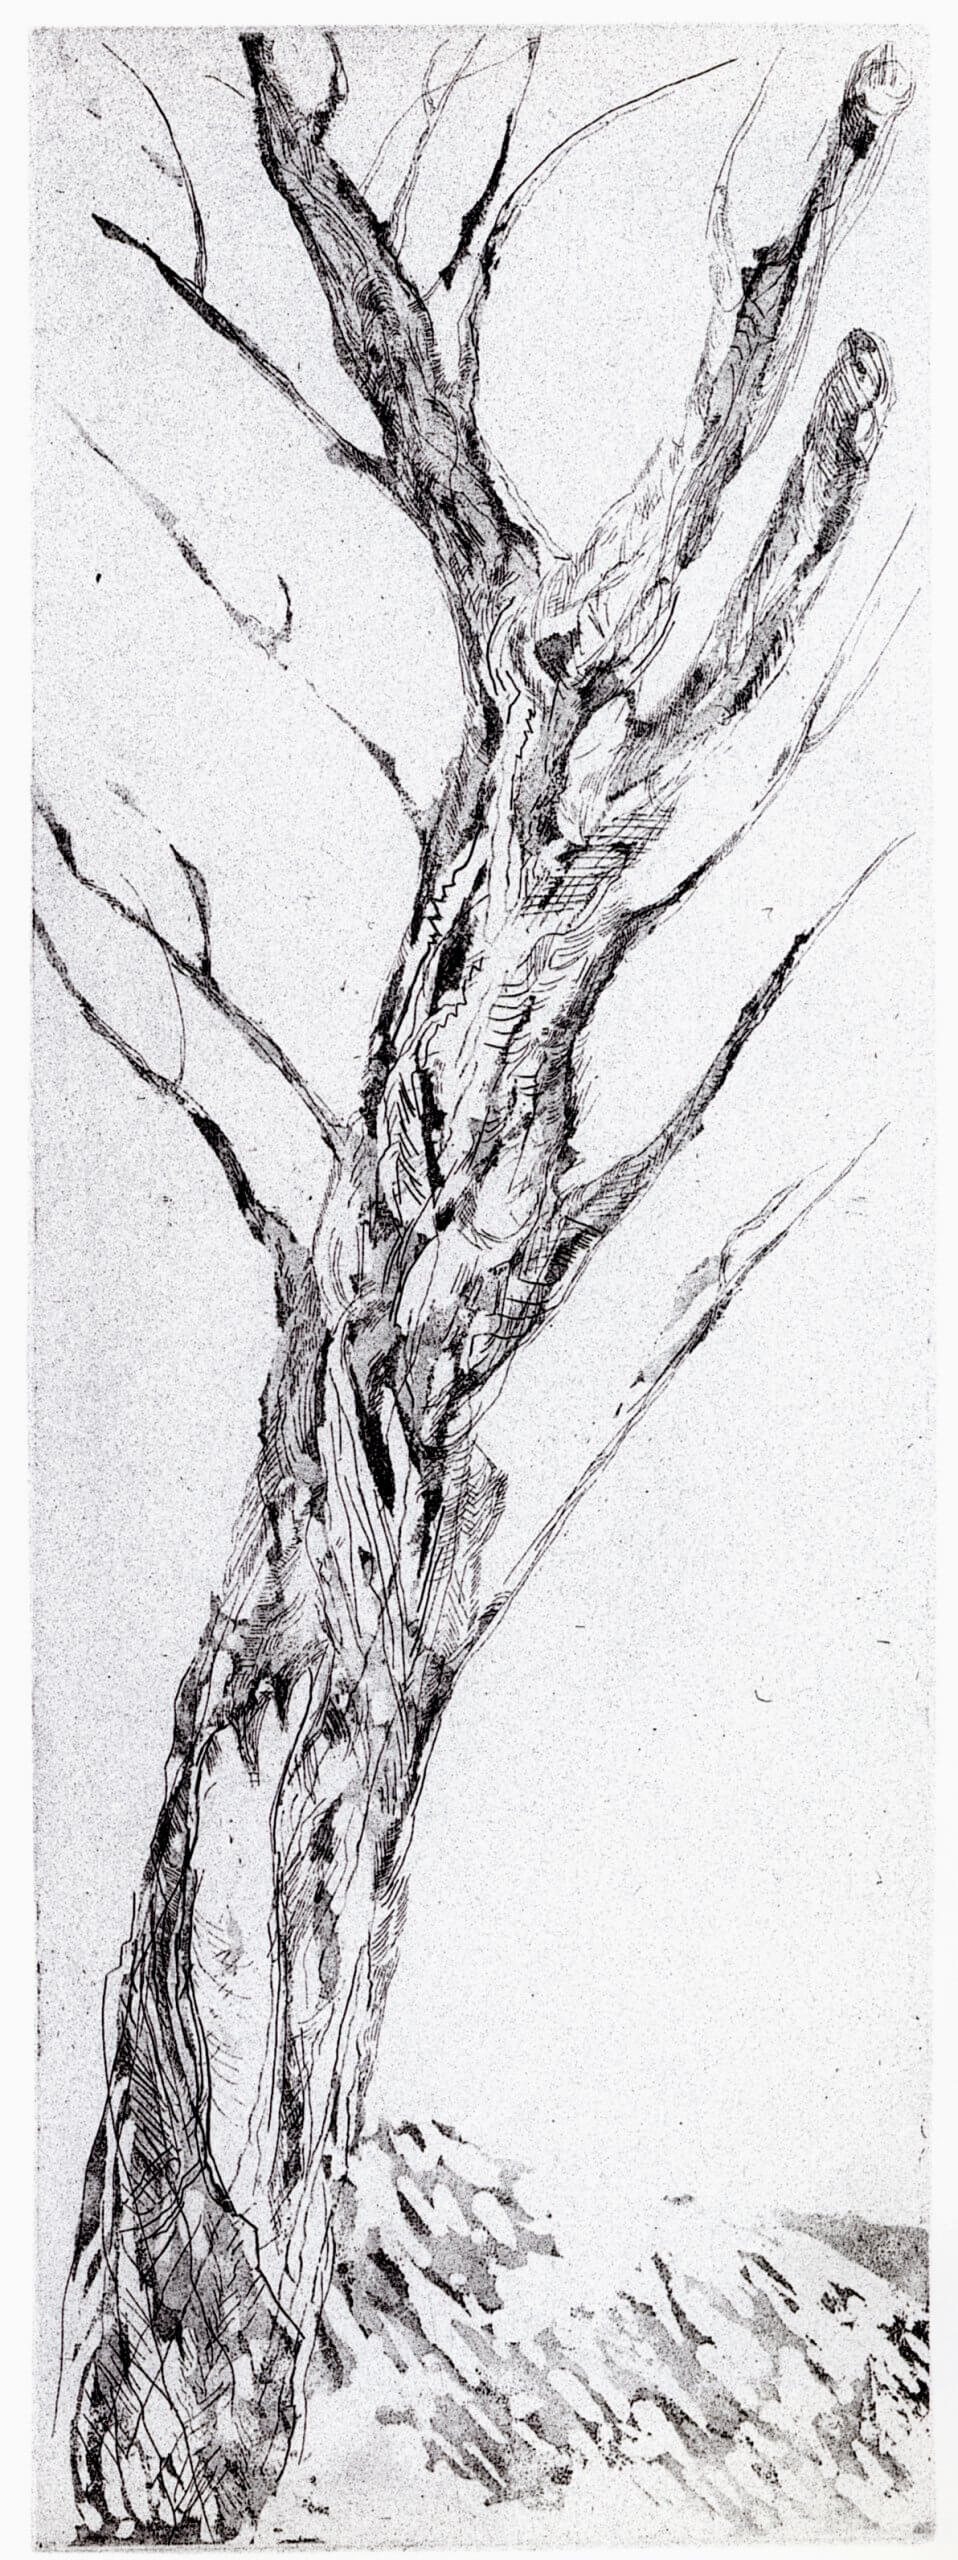 Maxim Kantor, Baum, 1997, Radierung, Auflage: 30, 139 x 49 cm